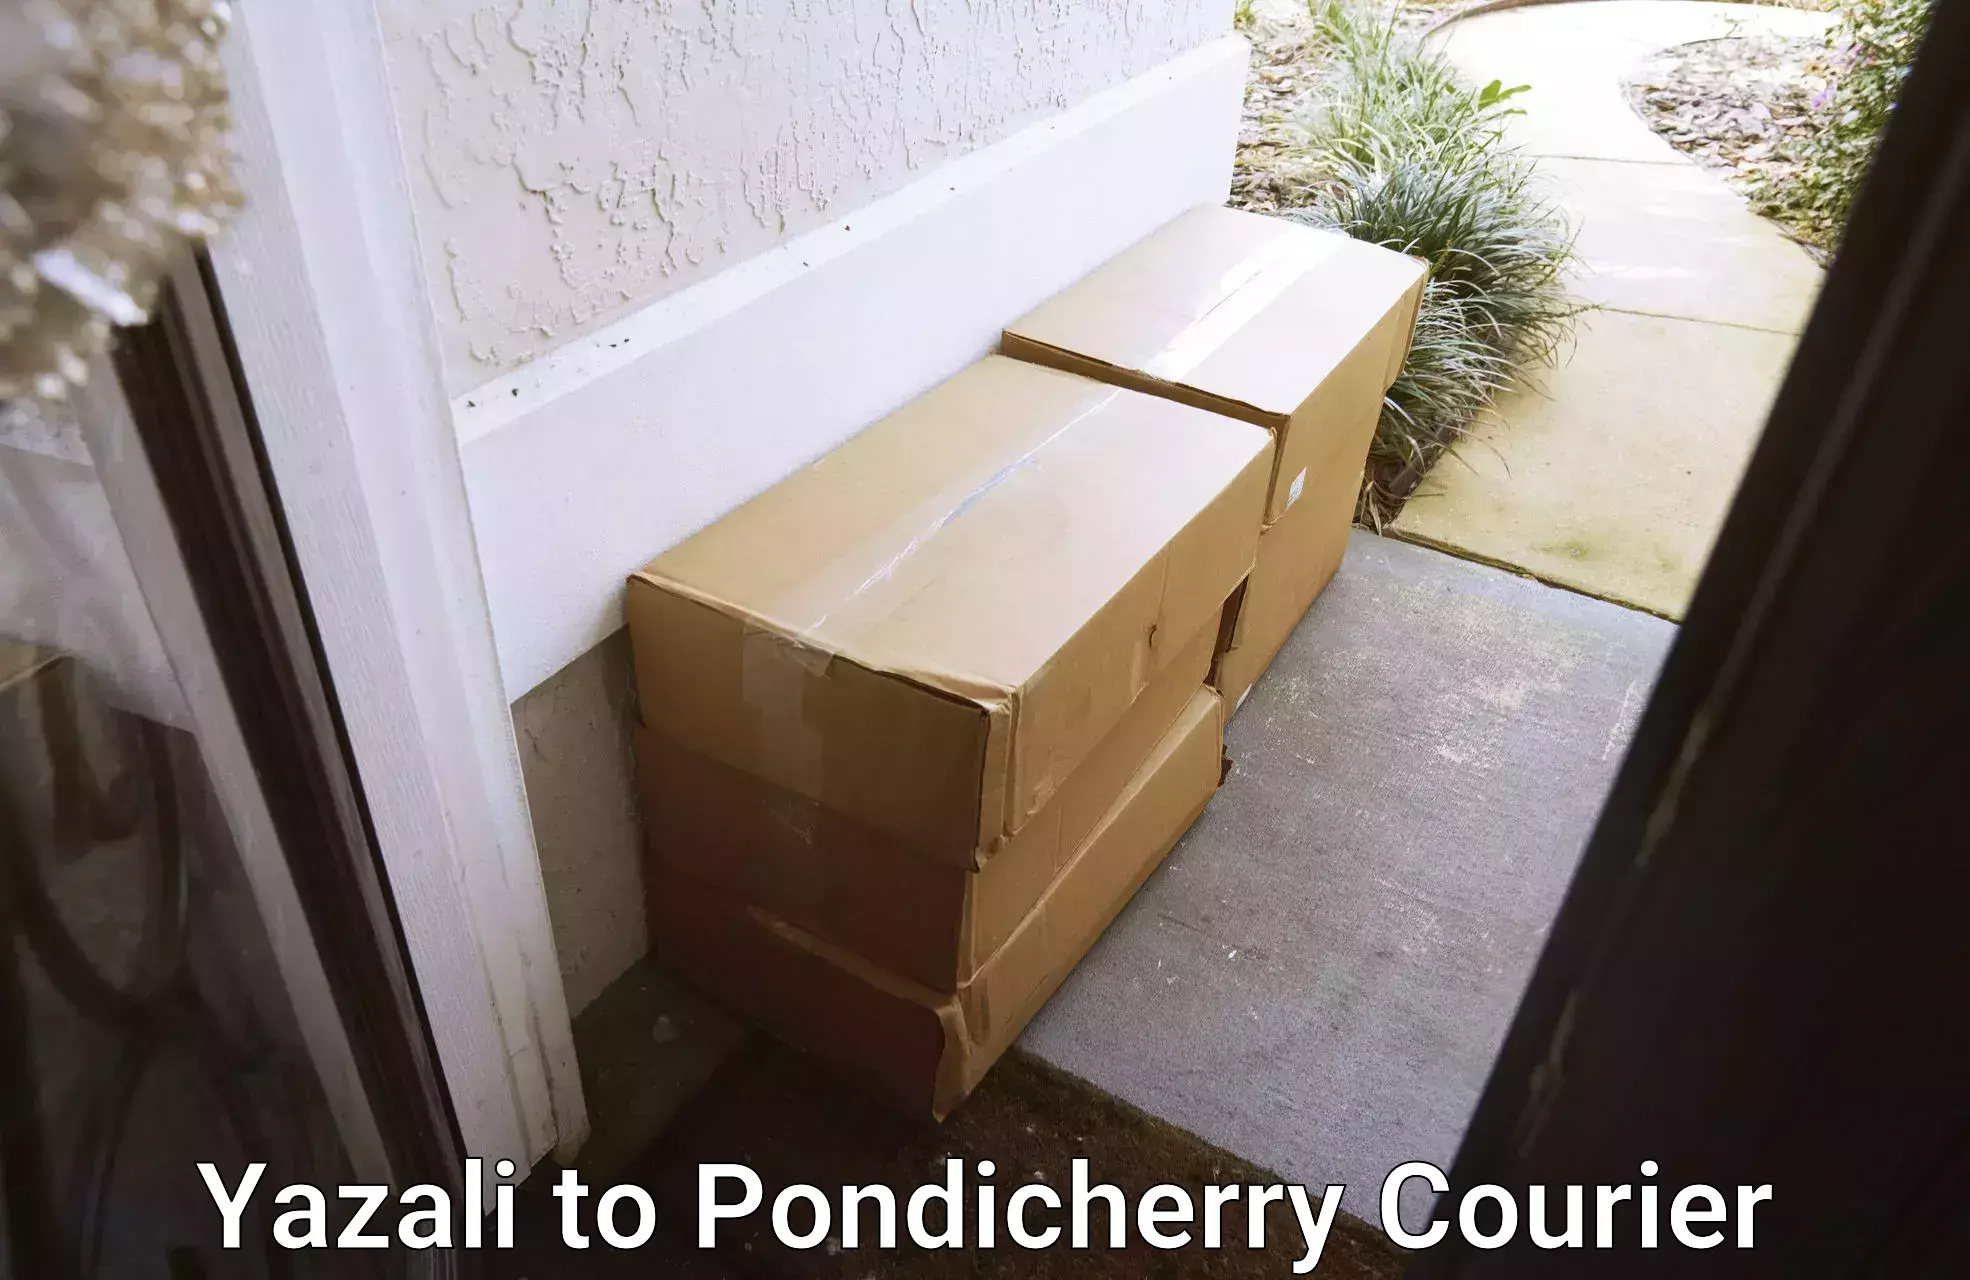 Online courier booking Yazali to Pondicherry